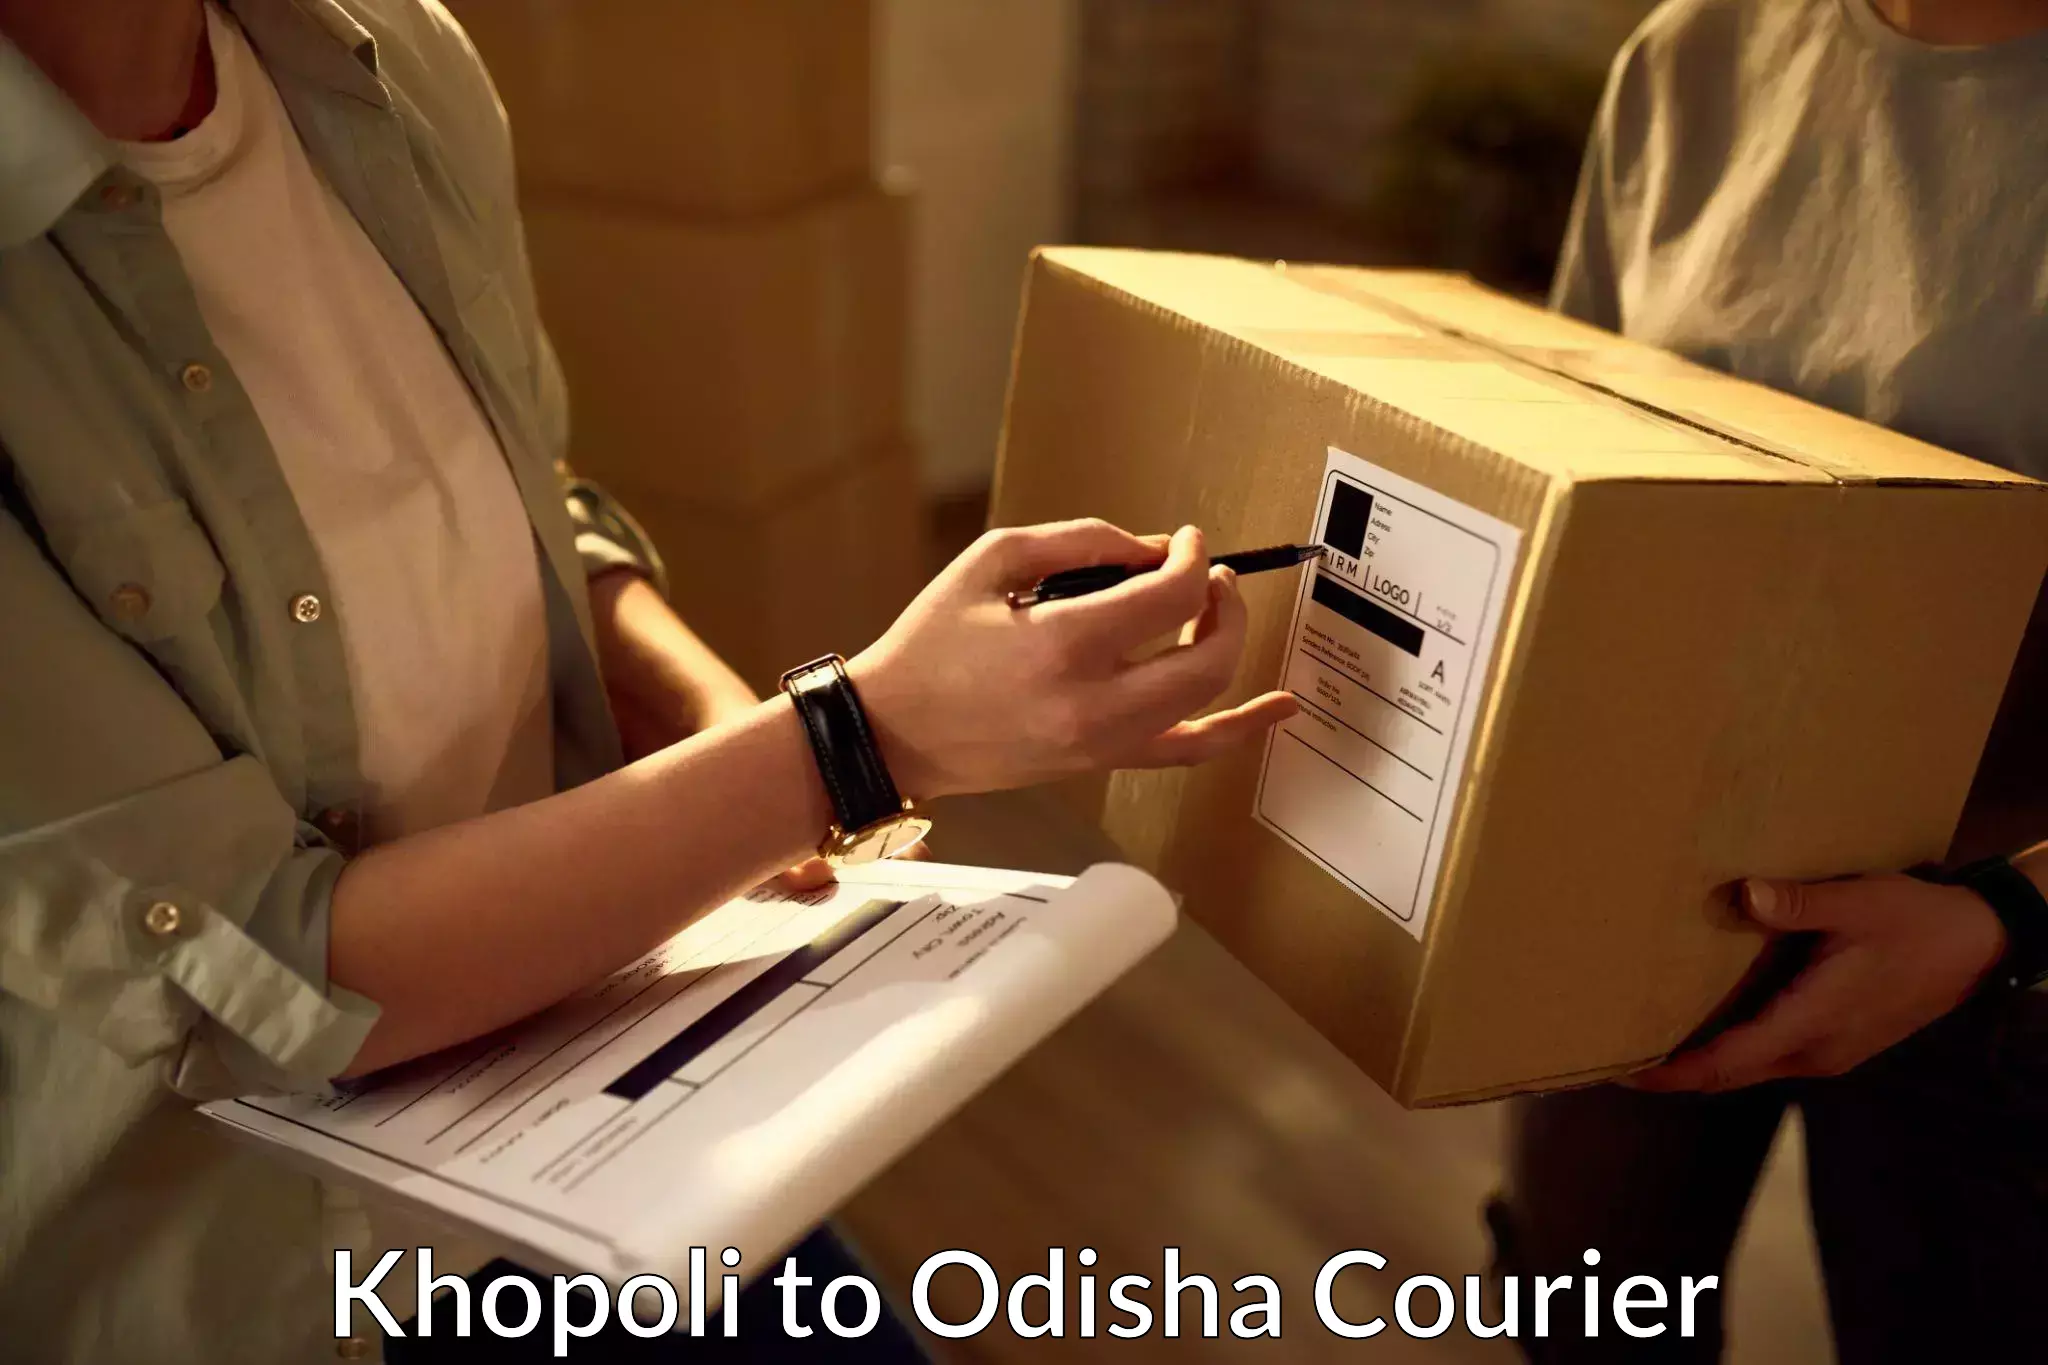 International parcel service Khopoli to Odisha